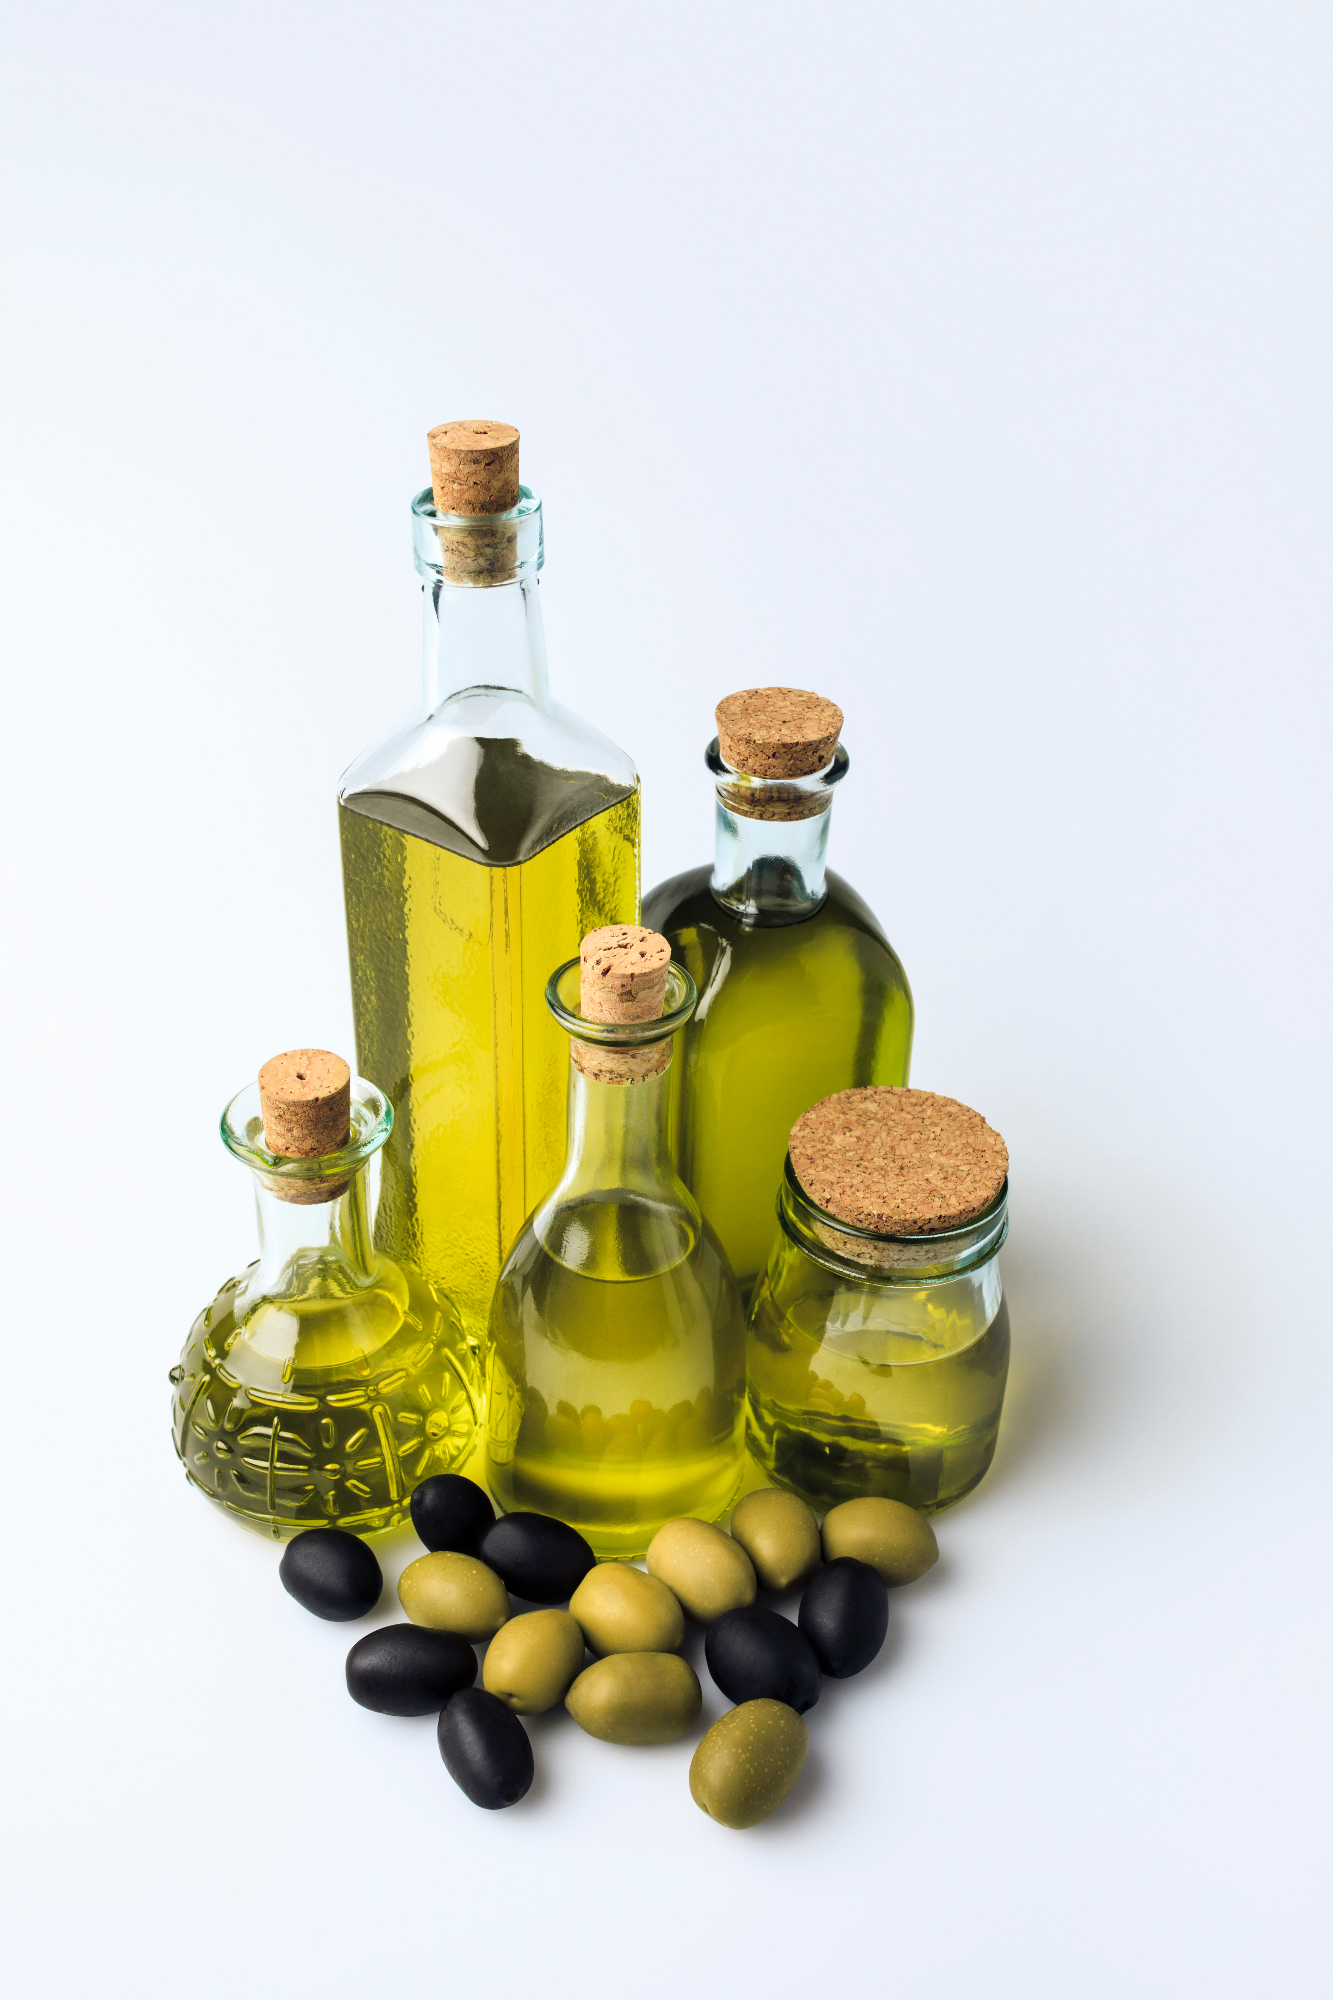 Ekstra deviško oljčno olje in zdrav način prehranjevanja